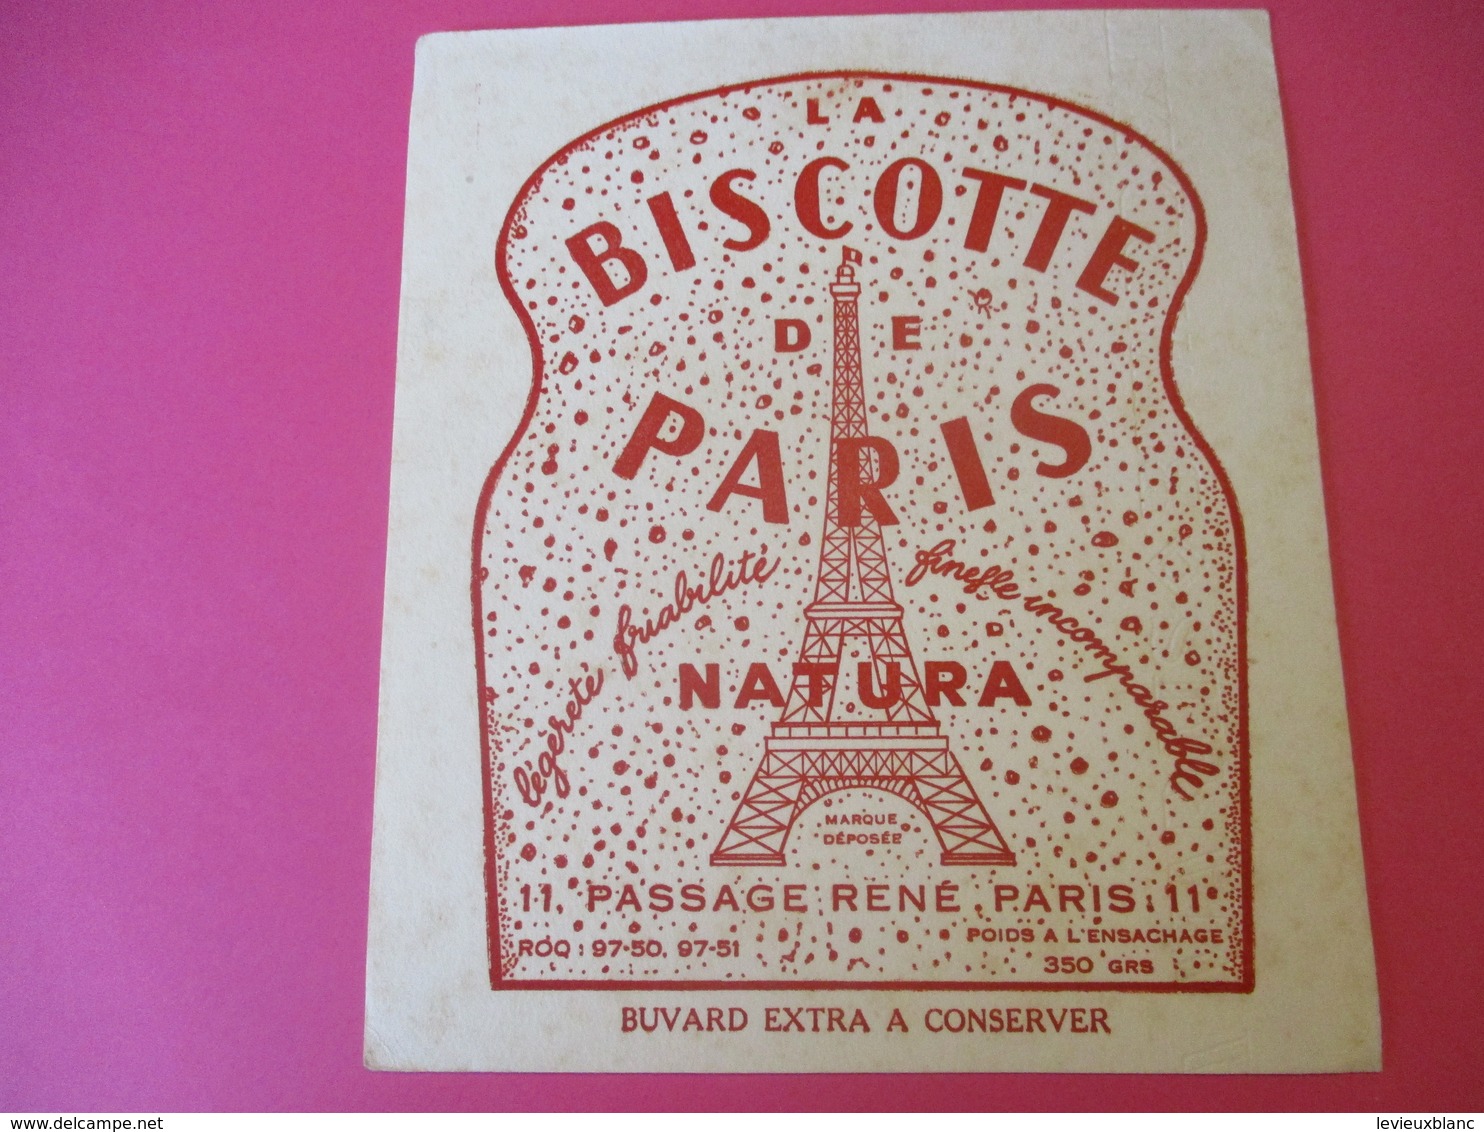 Buvard/La Biscotte De PARIS/NATURA/Légéreté Friabilité/Finesse Incomparable/Passage René/PARIS/Vers 1940-1960 BUV383 - Zwieback